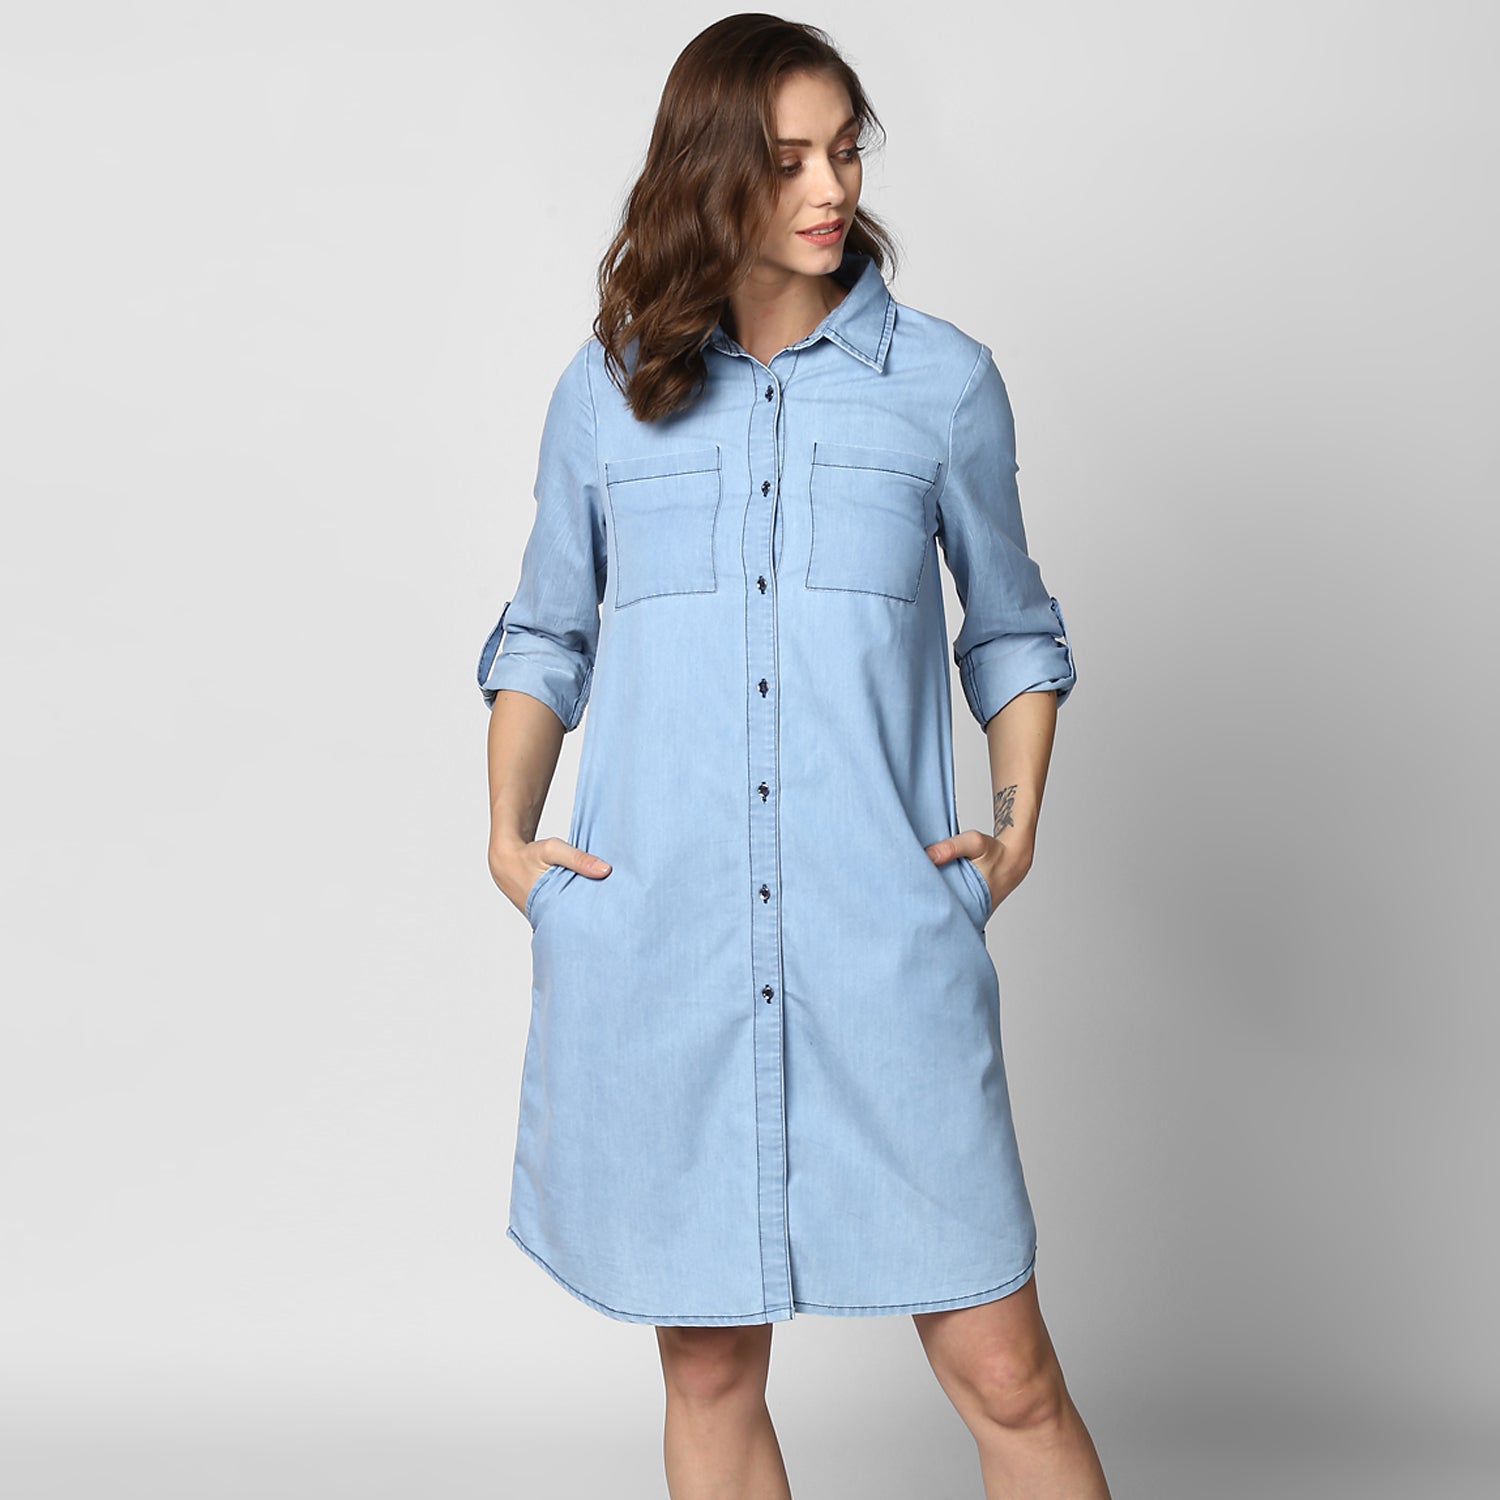 Women's Light Blue Denim Double Pocket Double Flap Dress - StyleStone